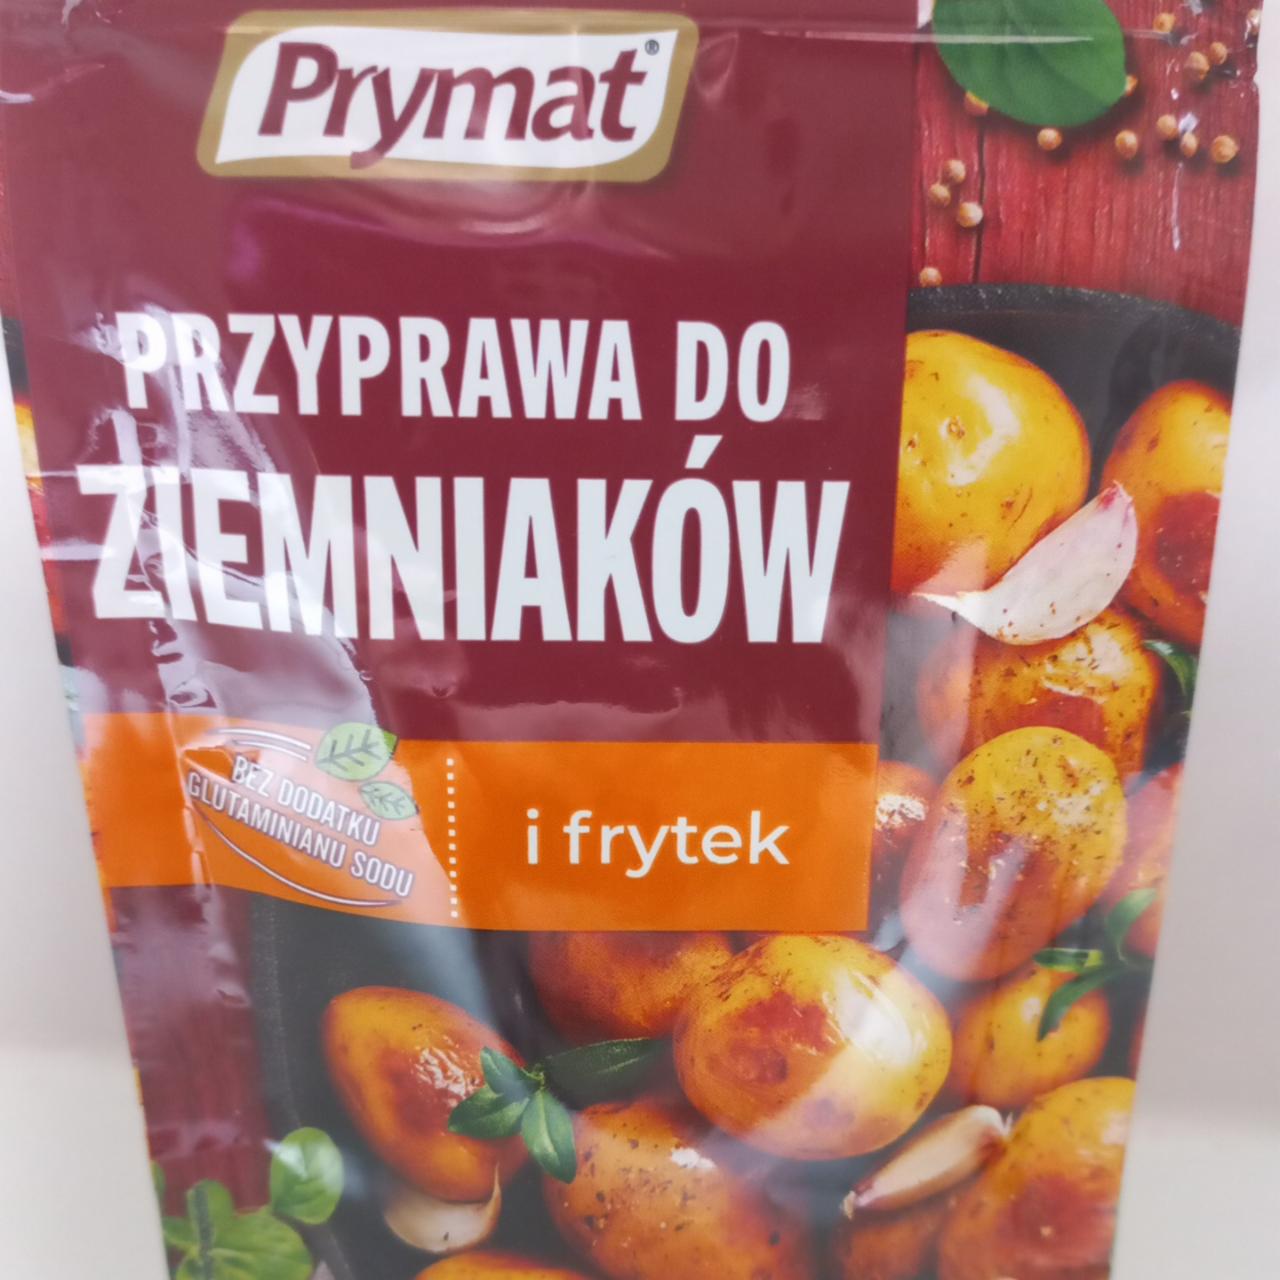 Fotografie - Przyprawa do ziemniaków i frytek Prymat